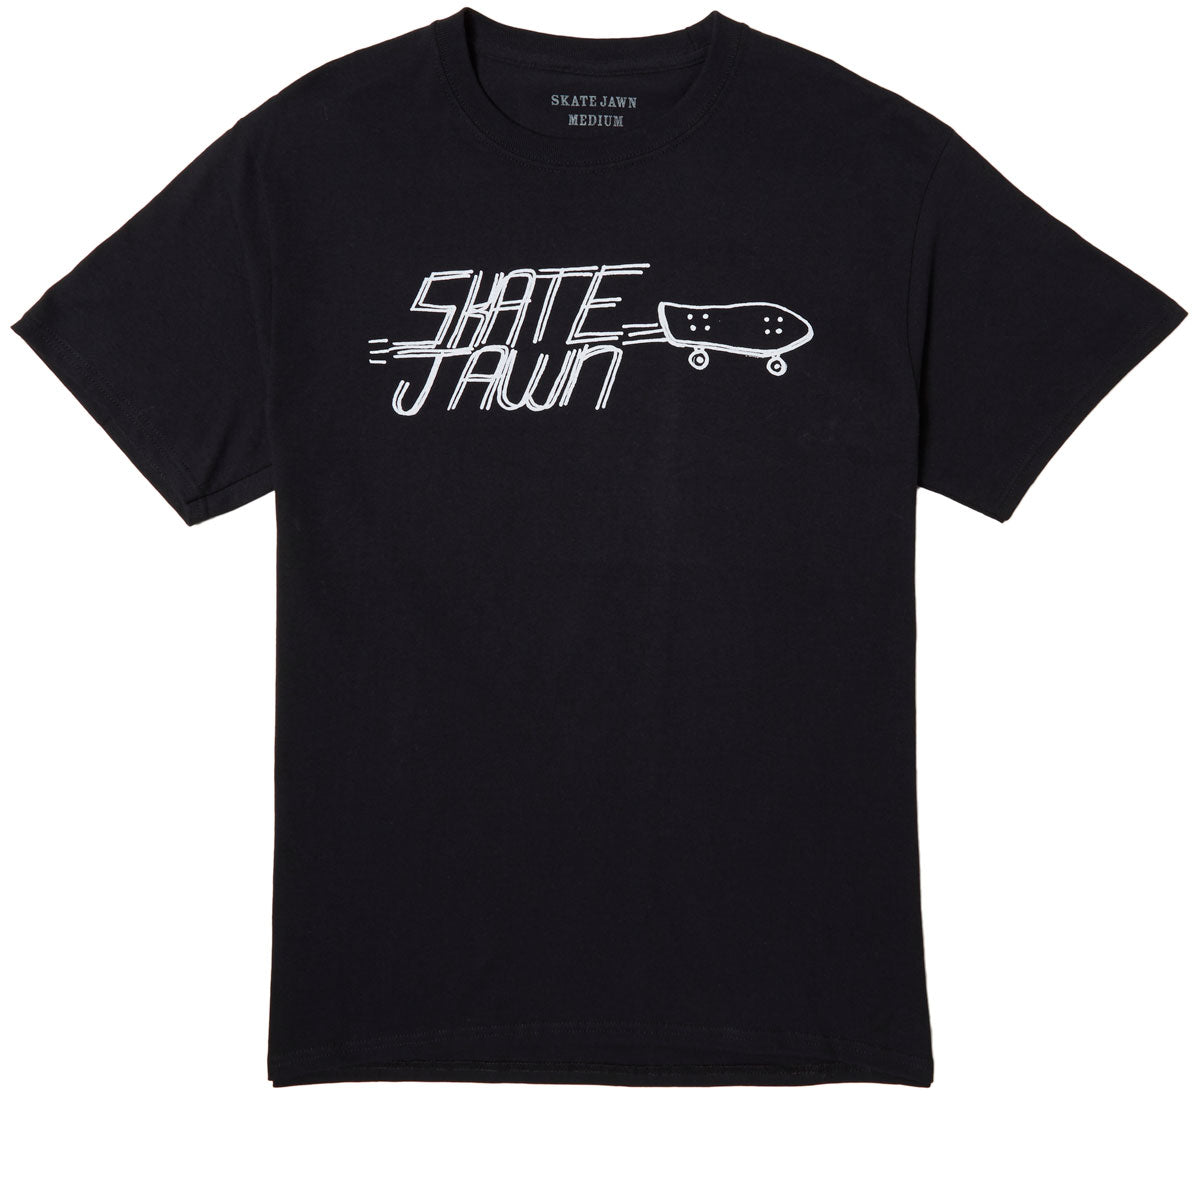 Skate Jawn Cruiser T-Shirt - Black image 1